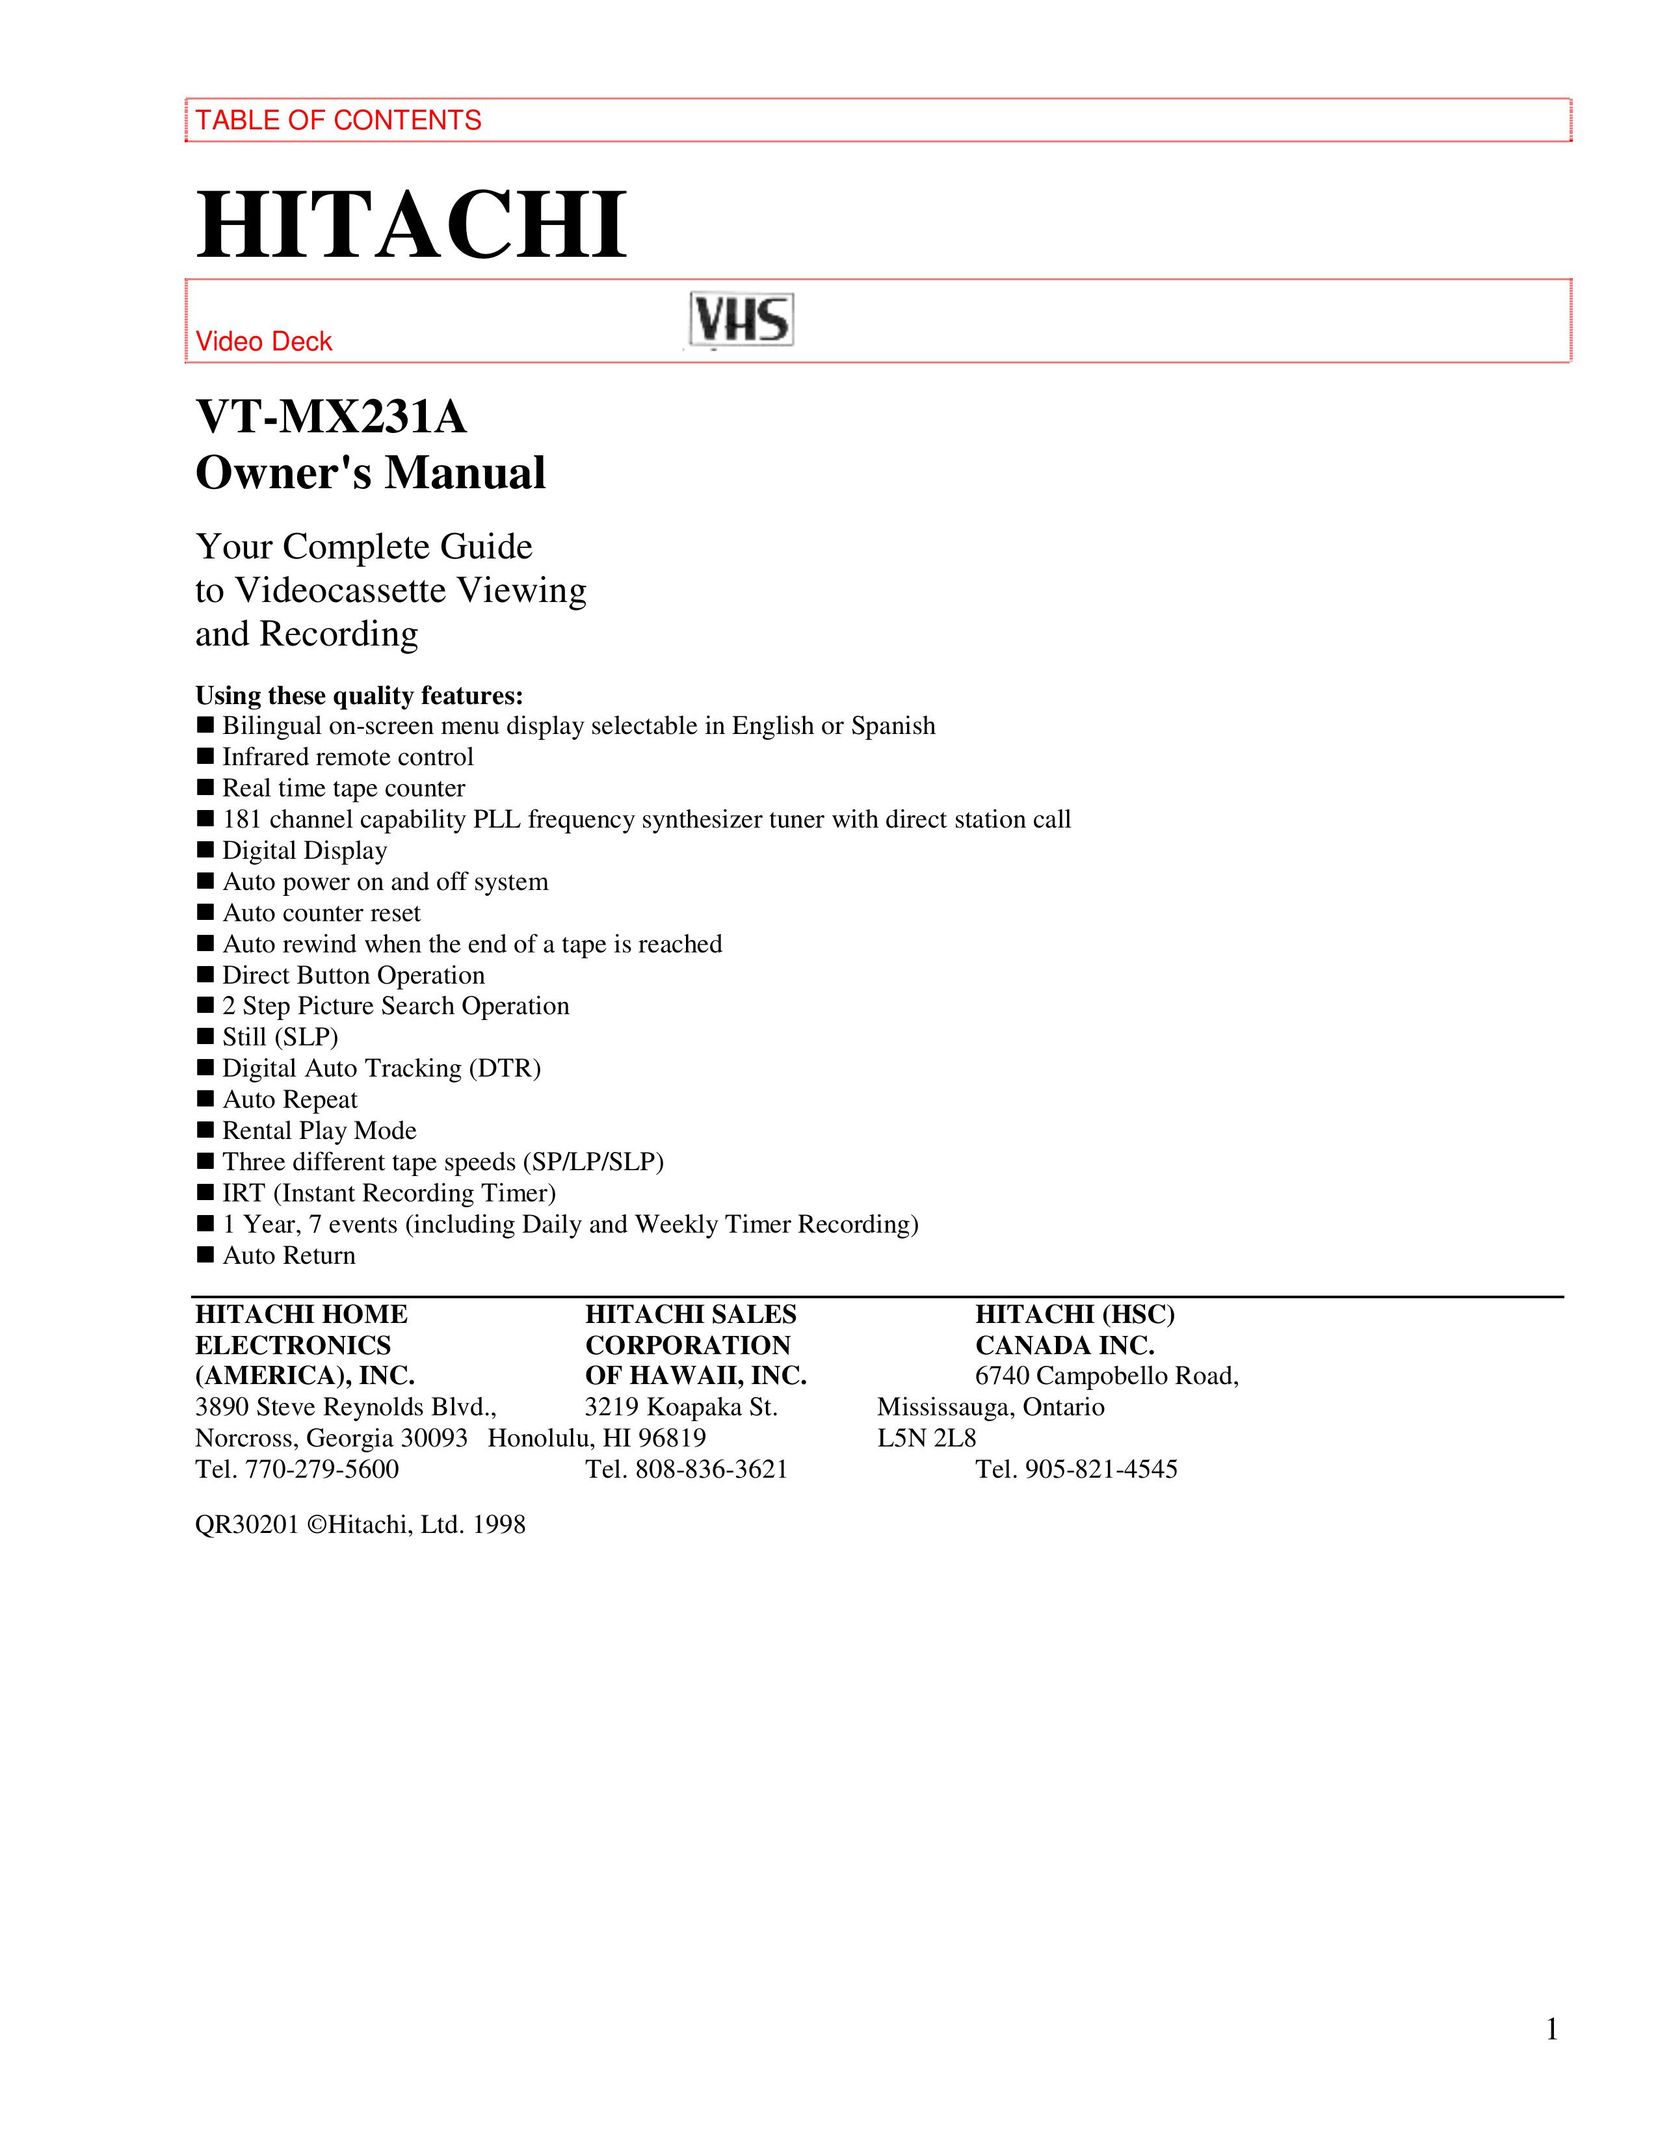 Hitachi VTMX-231A VCR User Manual